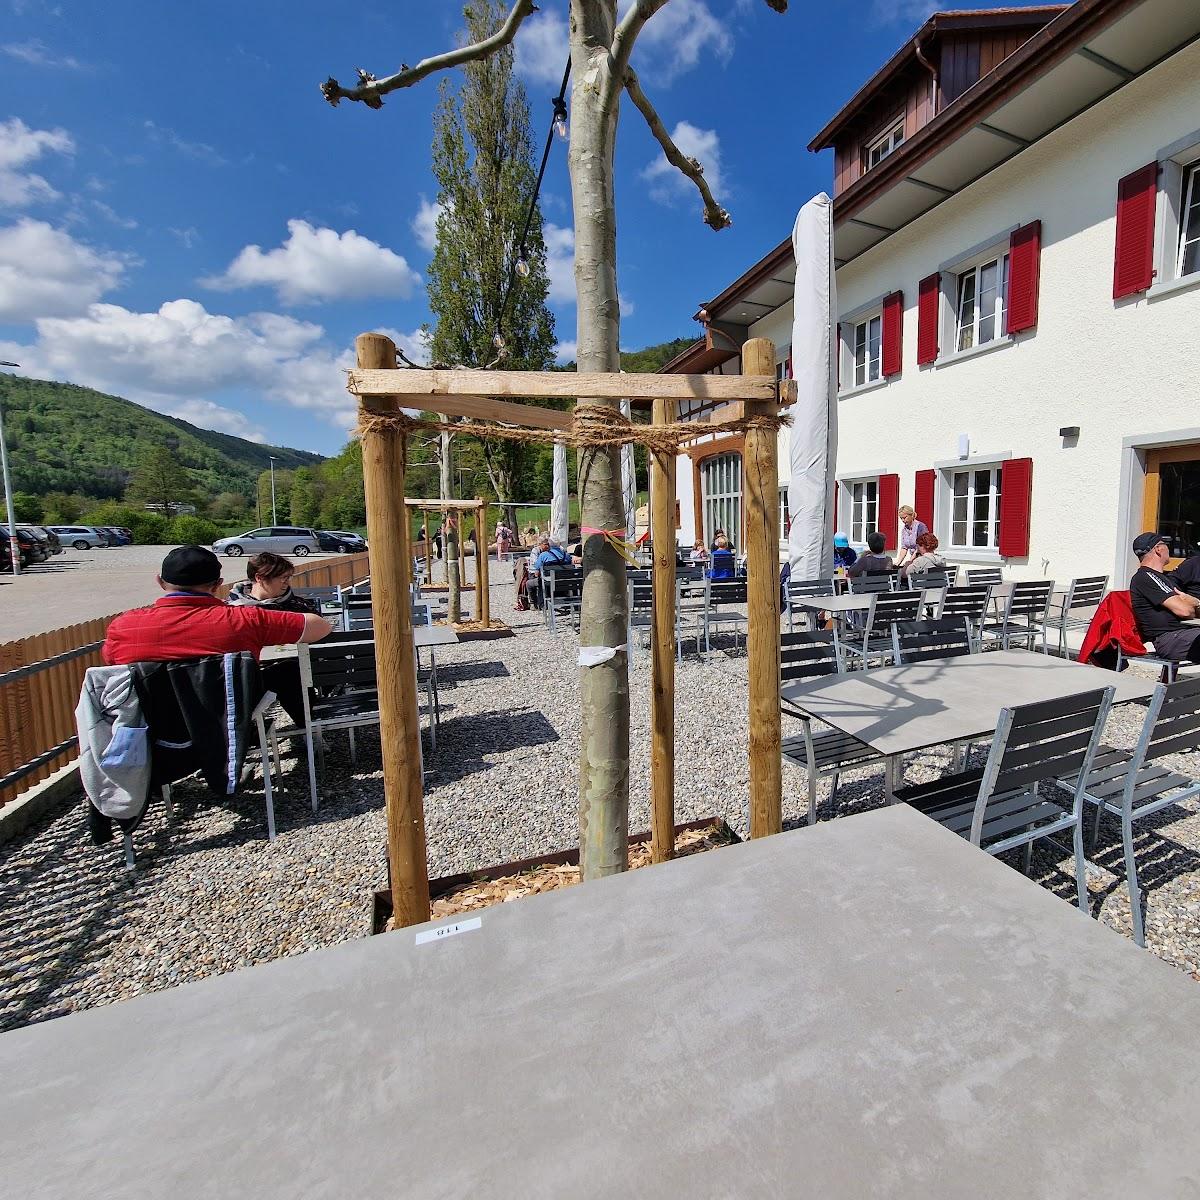 Restaurant "Gasthof Ziegelhütte" in Schaffhausen